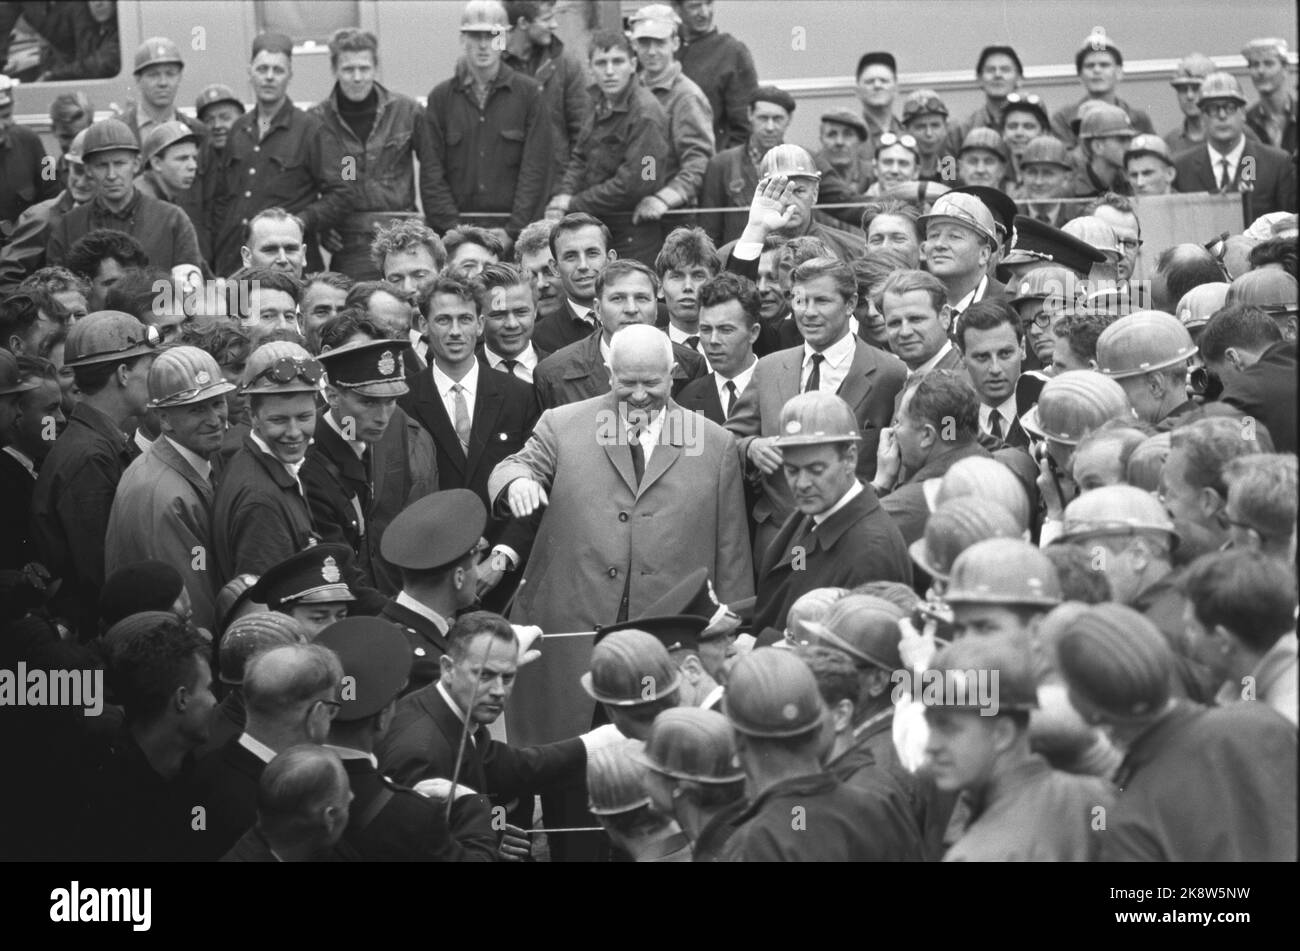 Schweden 196400704. Der sowjetische Führer Nikita Chruschtschow zu einem offiziellen Besuch in Sveige. Hier besucht Chruschtschow die Gøtaverken. Wir sehen ihn (in der Mitte des Bildes). Die Polizisten sind nervös, aber einige von ihnen mit Helm auf dem Kopf sind wahrscheinlich Zivilpolizisten. Die schwedische Polizei wurde aufgefordert, Chruschtschow während des Besuchs zu umringen. Foto: Current / NTB Stockfoto